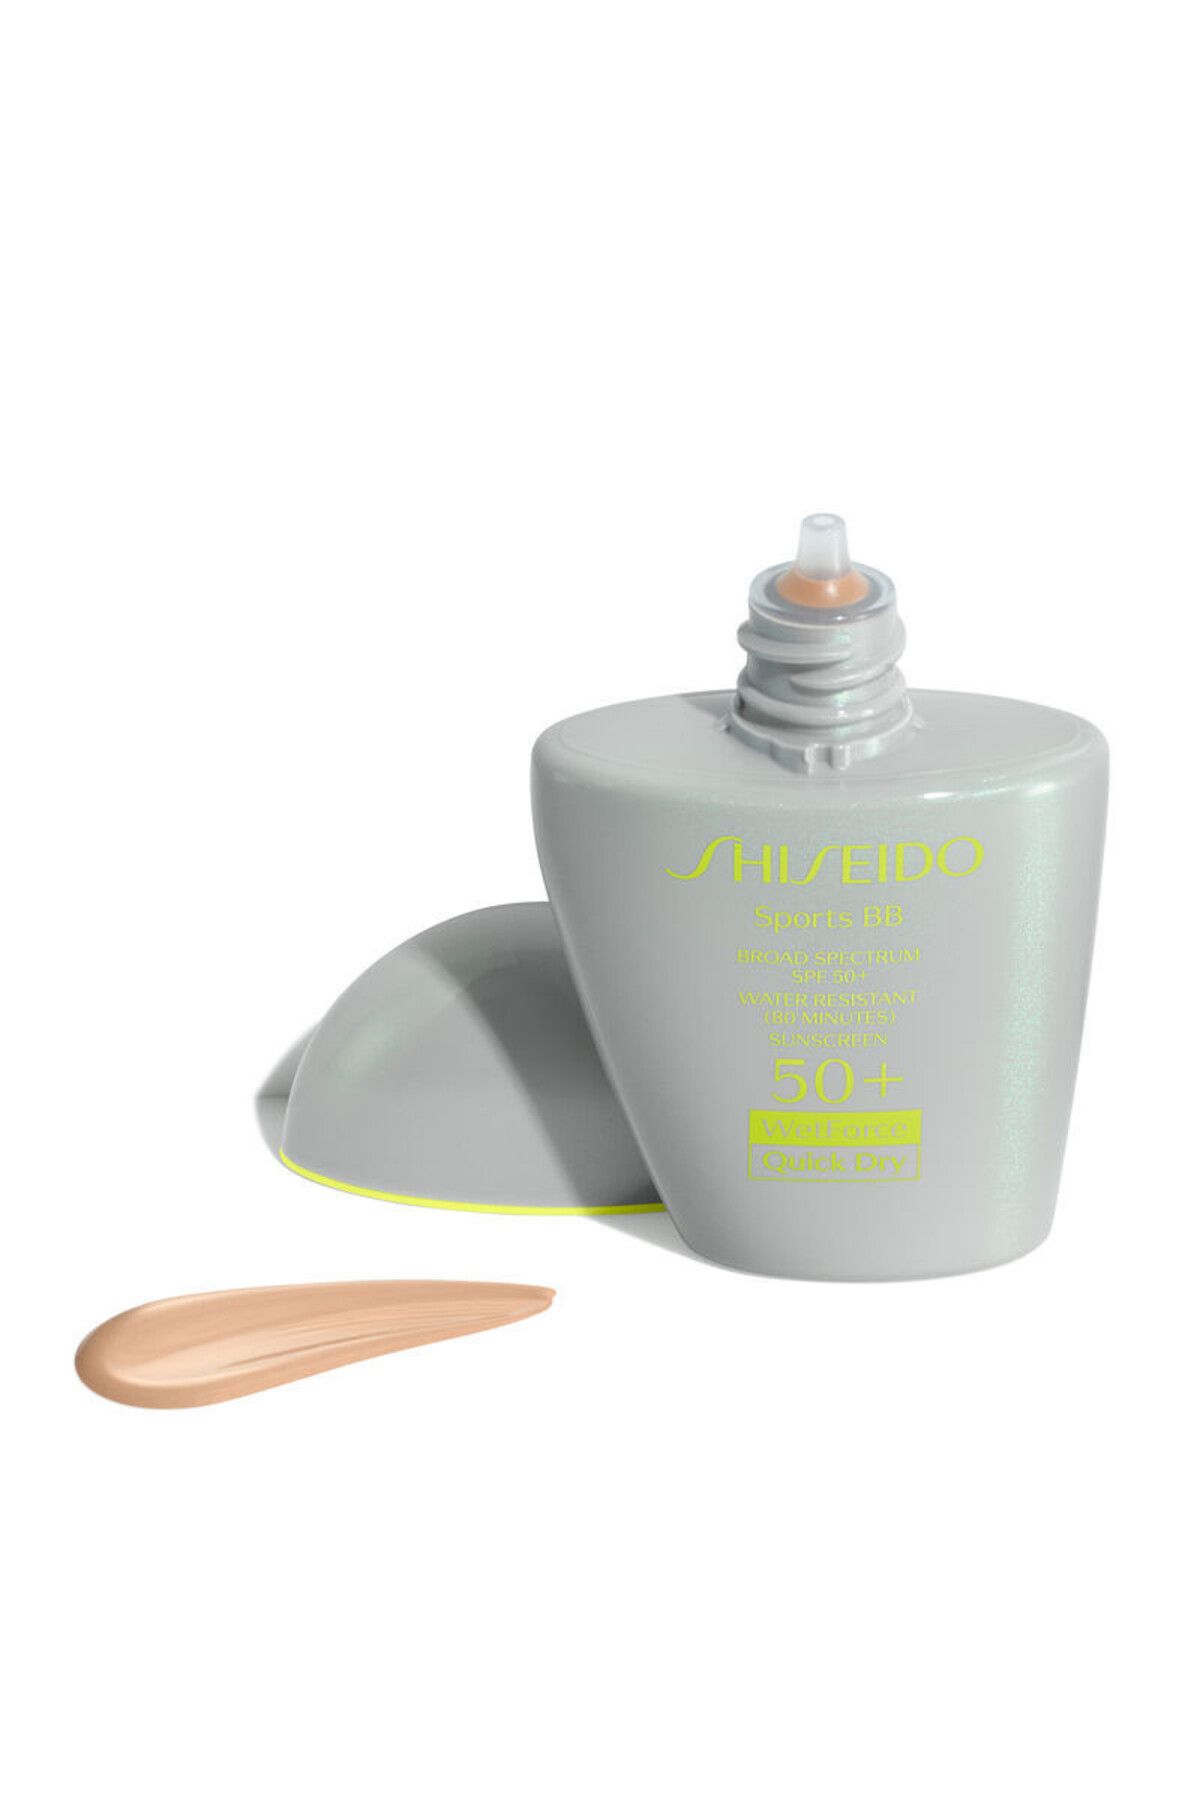 Shiseido Sporculara Özel Suncare Sports BB Spf50+ Medium Dark Güneş Koruyucu